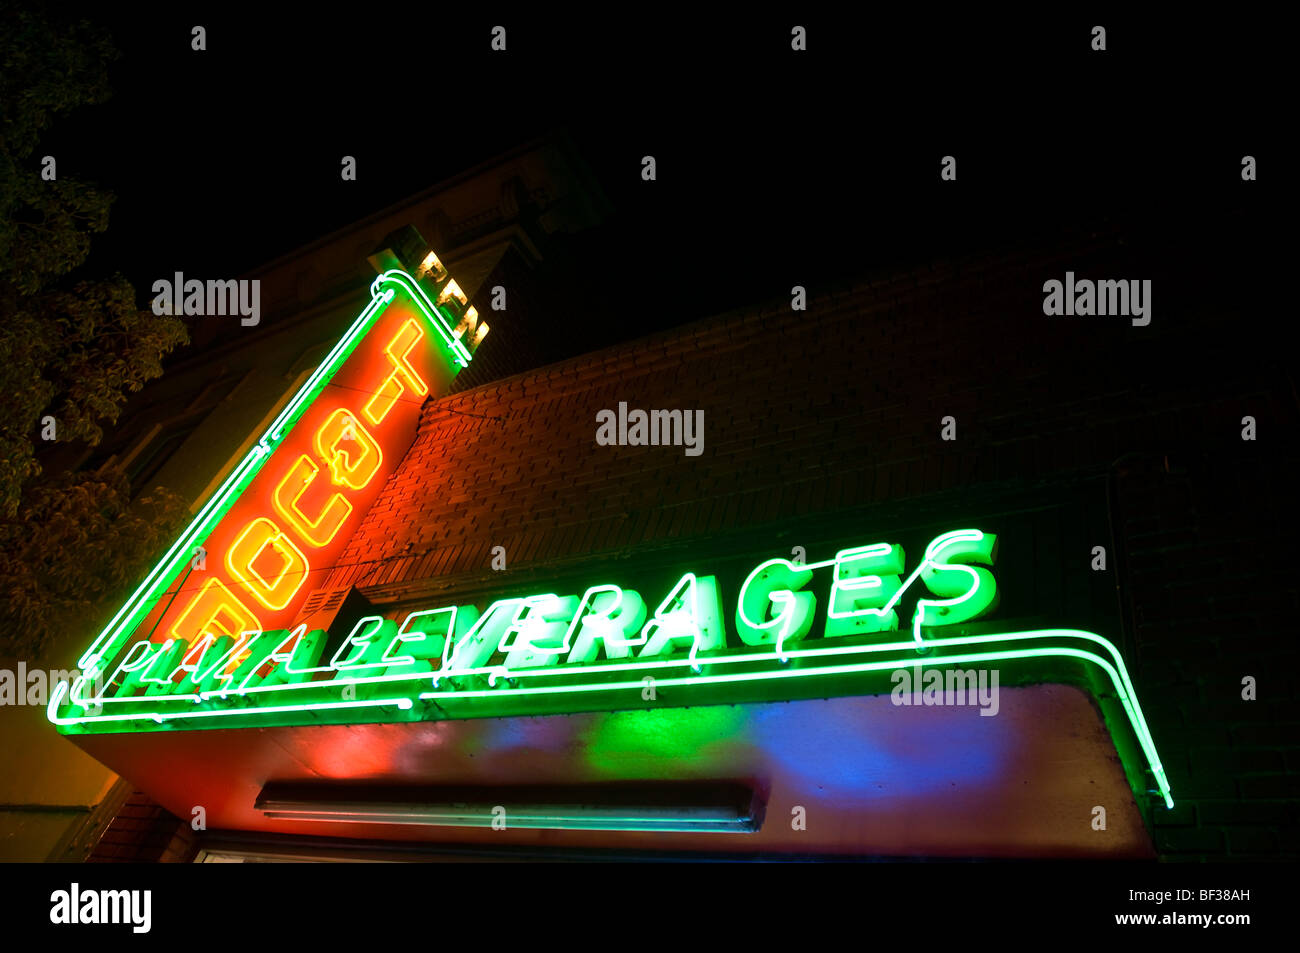 Nachtansicht der eine Leuchtreklame, die "Liquor" vertikal in rot und "Getränke" horizontal in grün sagt. Stockfoto